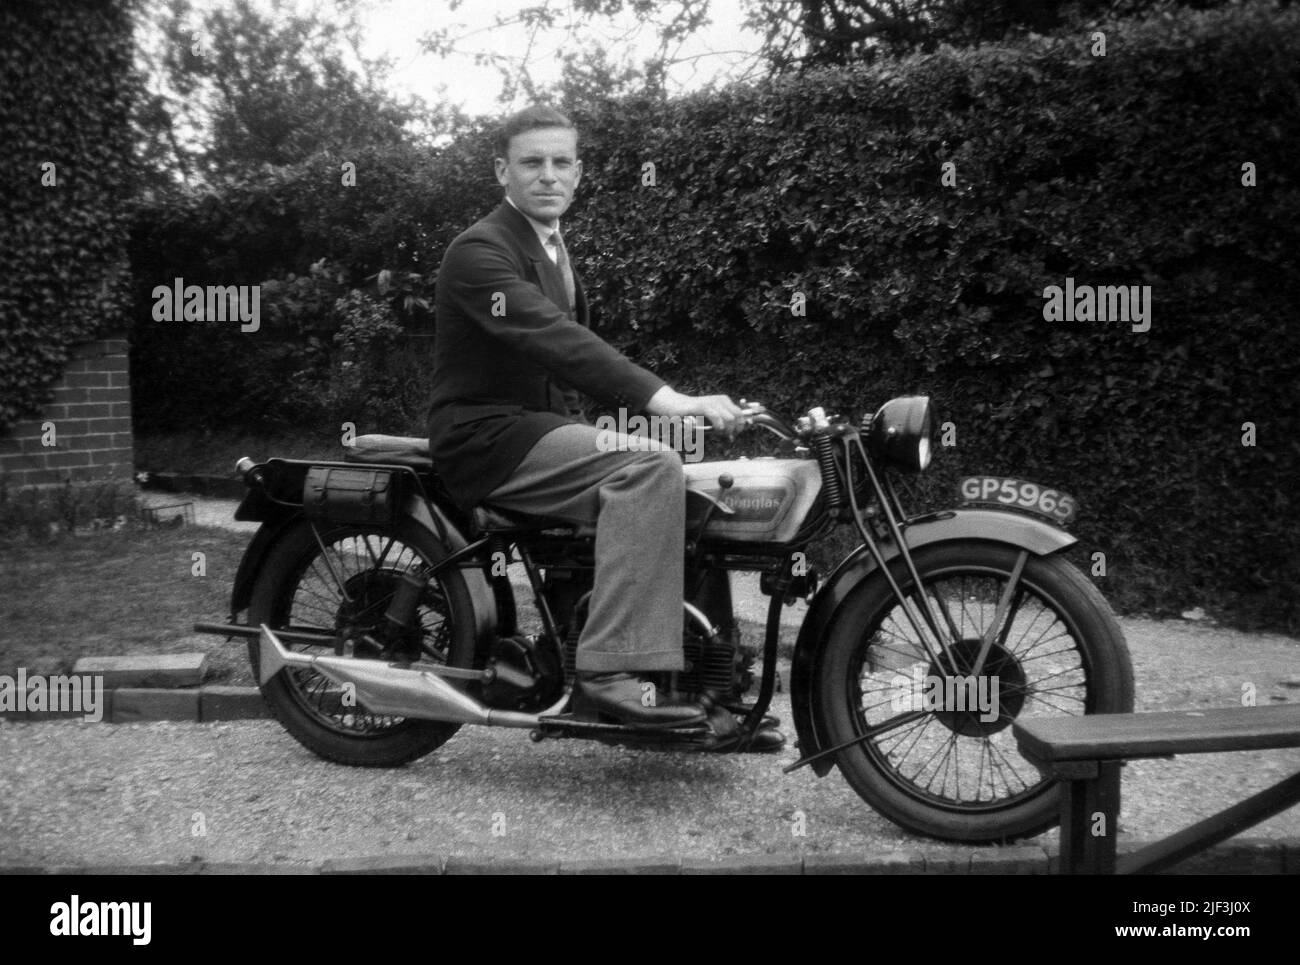 1930s, historique, un homme dans une veste et une cravate assis dans une allée sur une moto 'Douglas' de l'époque, Newbury, Berks, Angleterre, Royaume-Uni. Douglas était un fabricant de motos britannique basé à Kingswood, Bristol, qui a fonctionné de 1907 à 1957. Appartenant à la famille Douglas jusqu'en 1931, lorsqu'elle est devenue une société publique, ils étaient connus pour leurs motos bicylindres à double cylinder horizontal opposés et, en 1920s, ils ont reçu un prestigieux mandat royal en tant que constructeurs de cycles automobiles par nomination à H. M. le Roi (Roi George VI). Banque D'Images